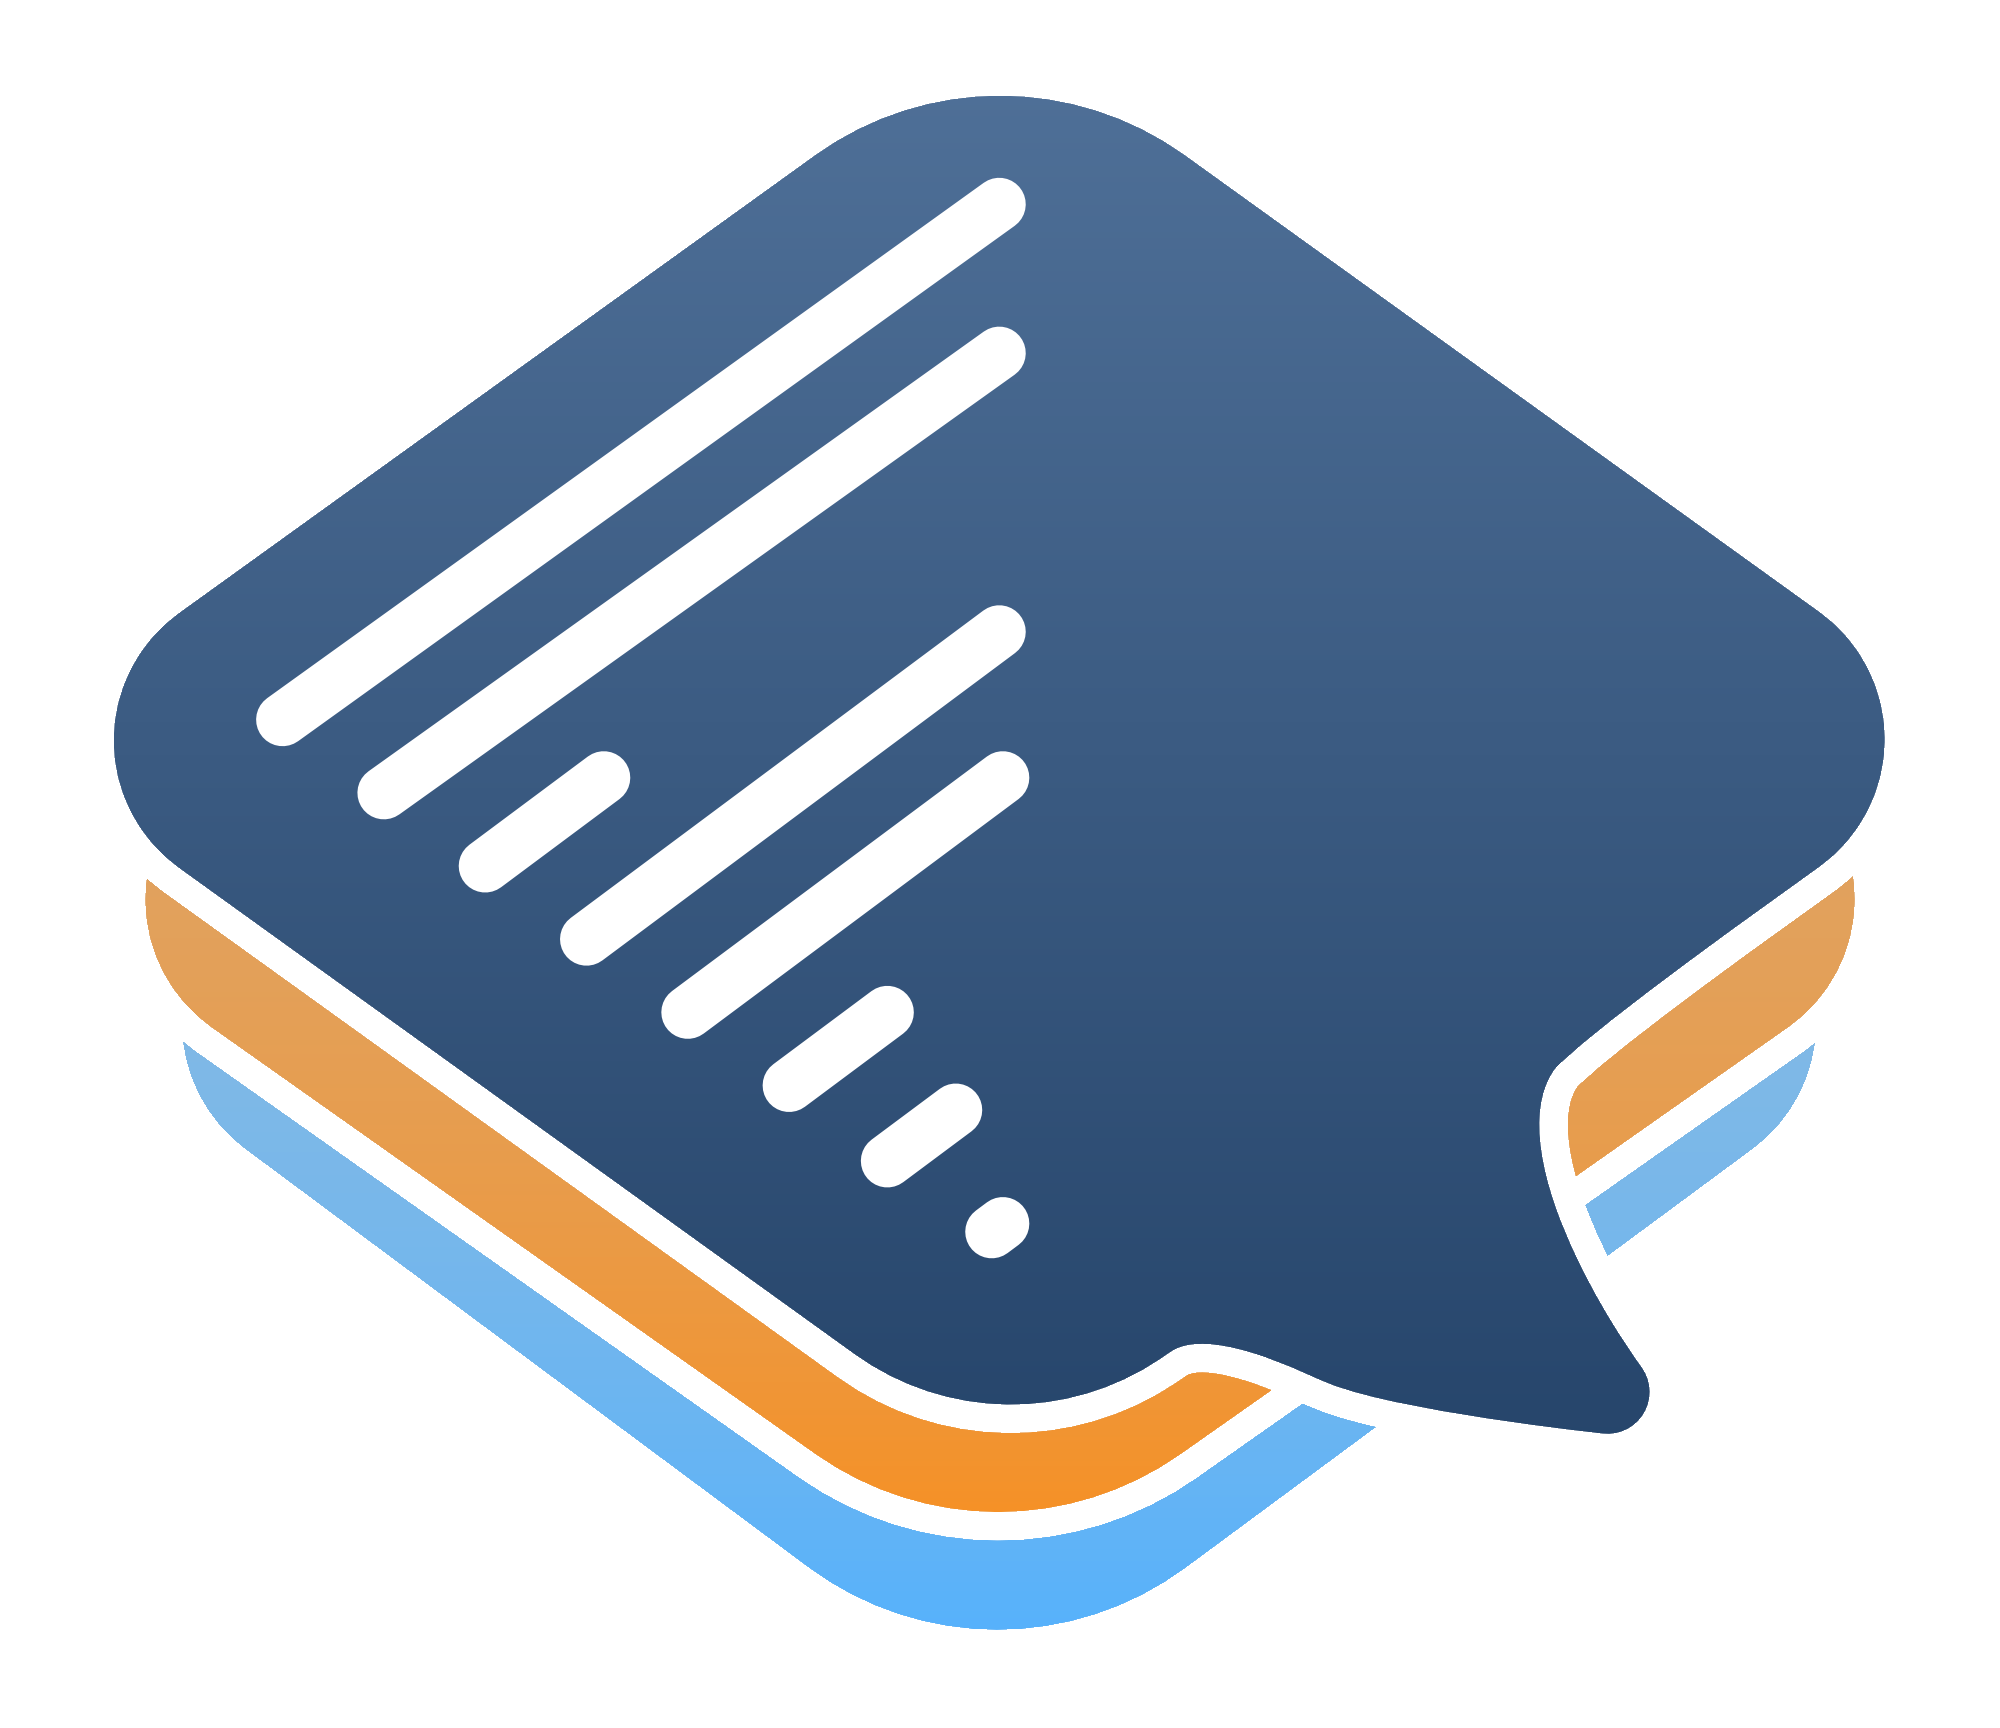 fullstack.chat logo